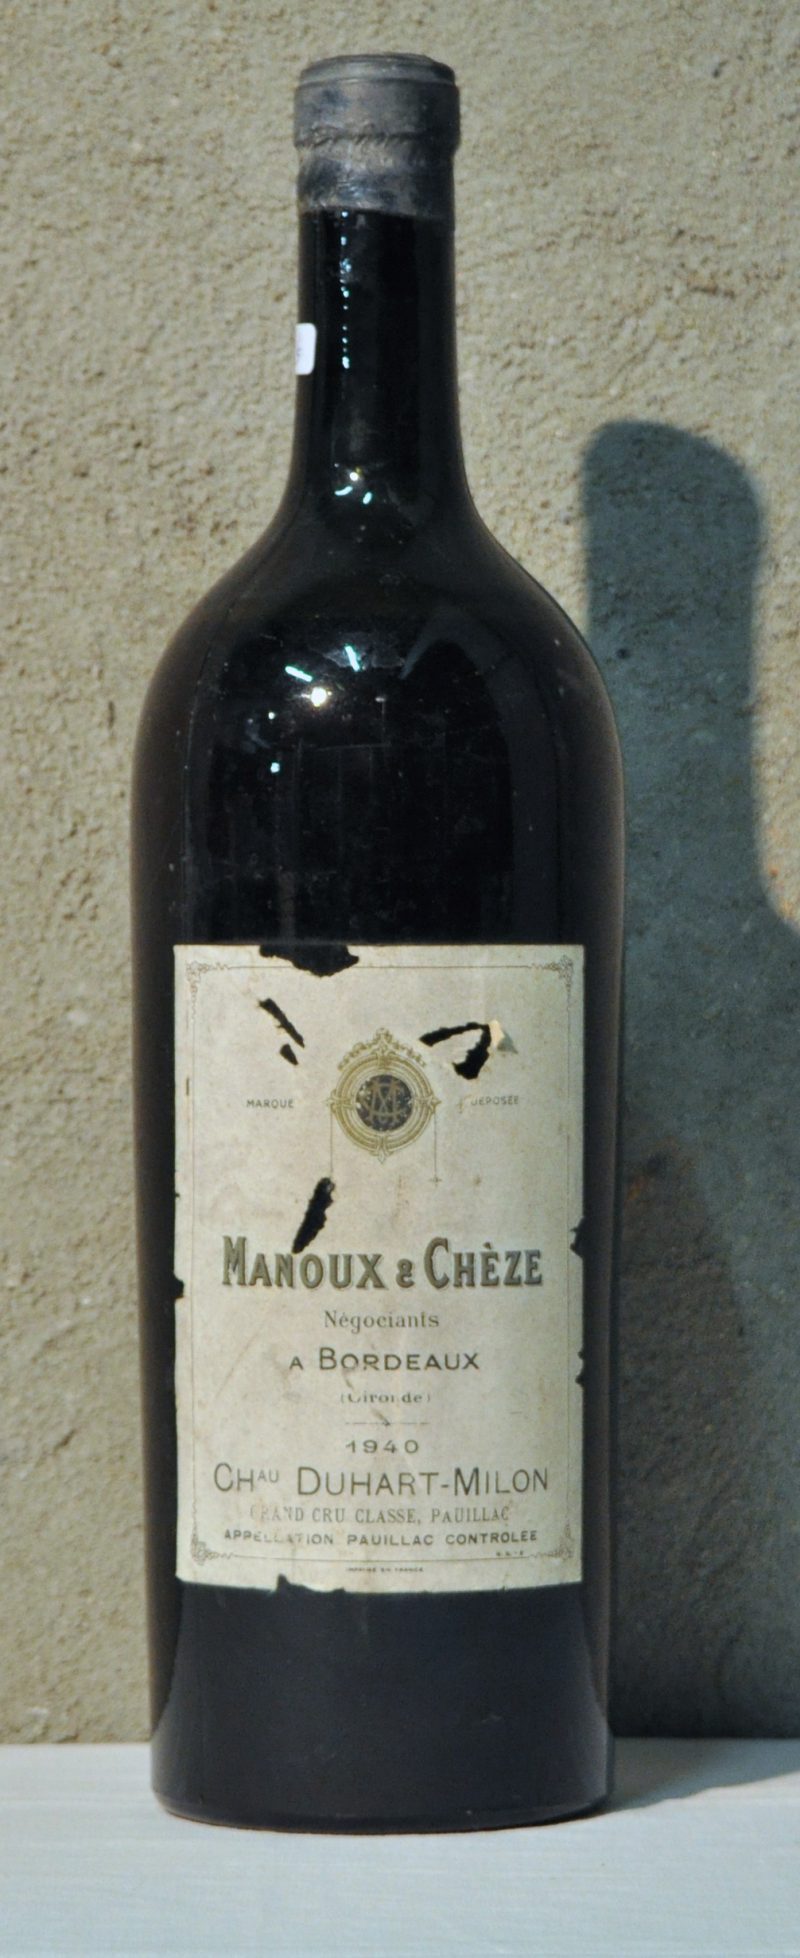 Ch. Duhart-Milon A.C. Pauillac 4e grand cru classé Manoux & Chèze, Bordeaux   1966  aantal: 1 Mag. ms